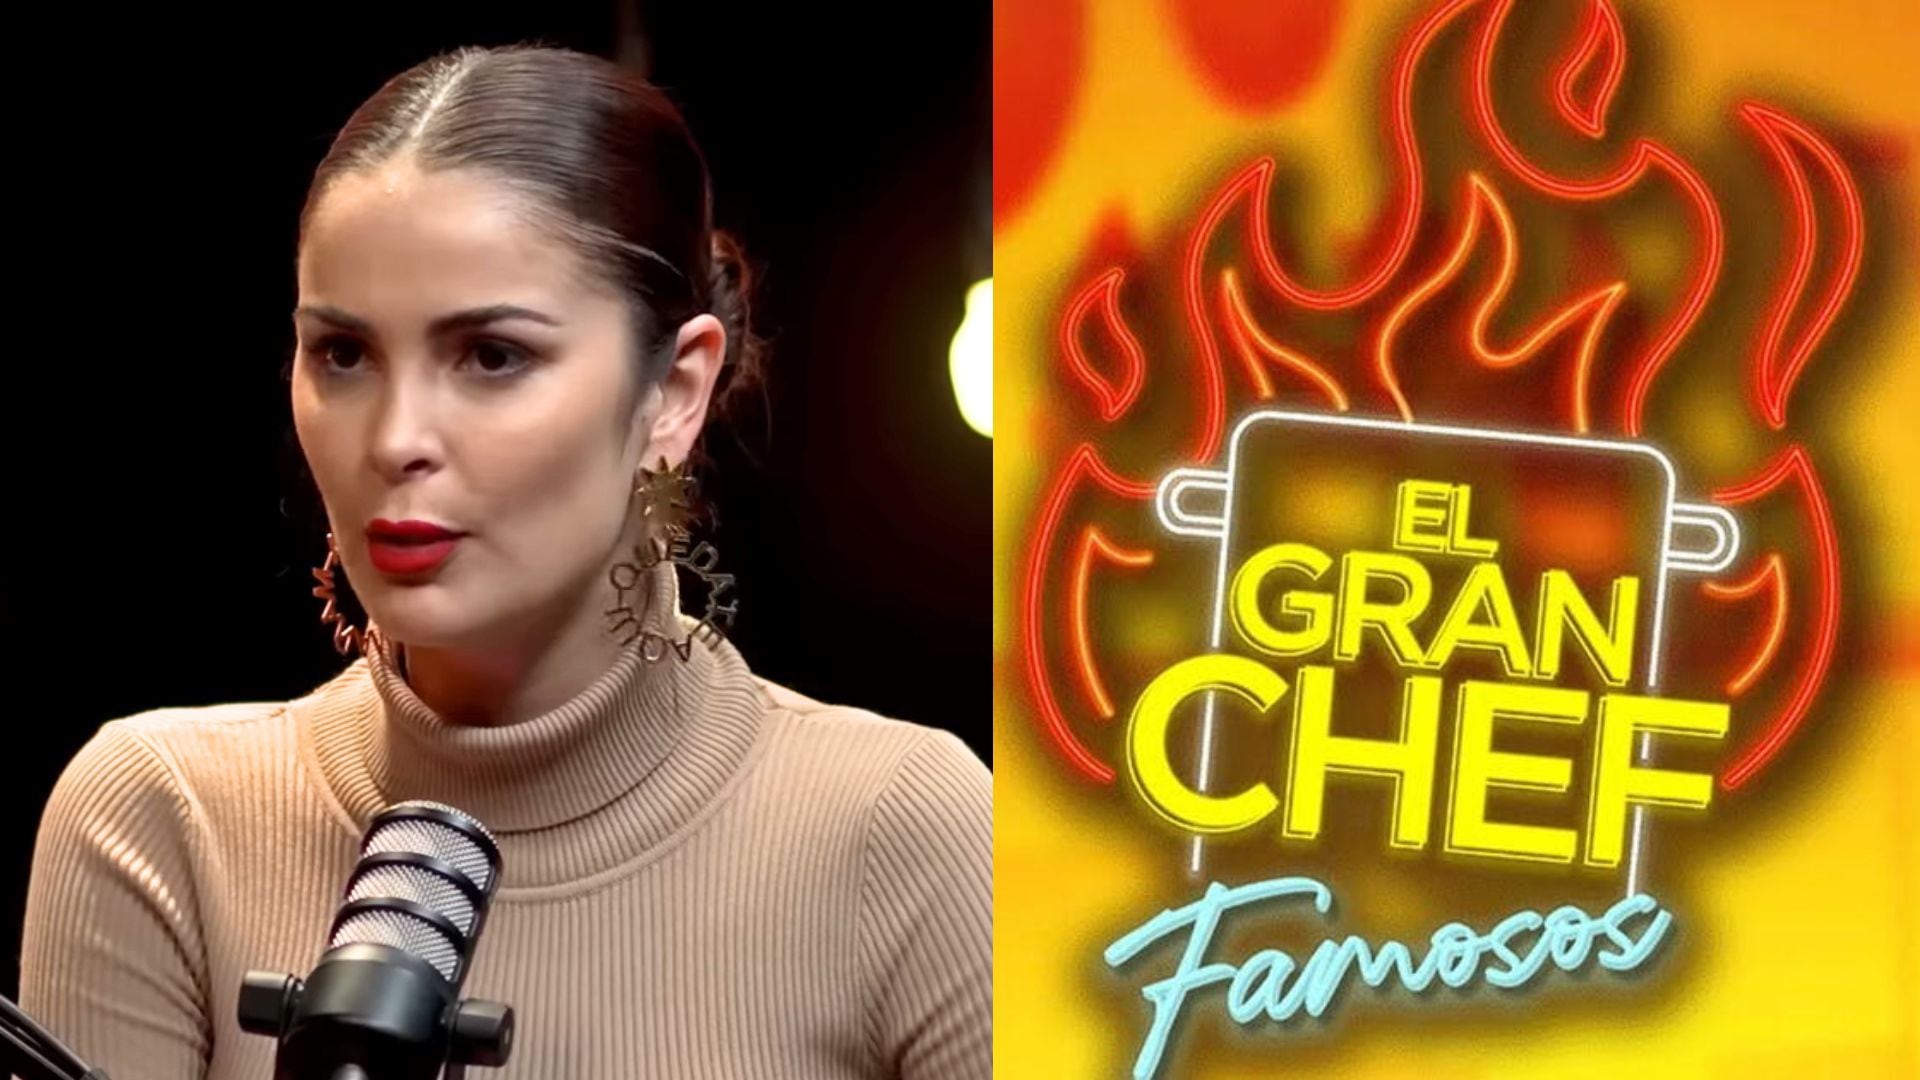 Laura Spoya contó la razón detrás de su eliminación en 'El Gran Chef Famosos'. Créditos a Youtube y Latina TV